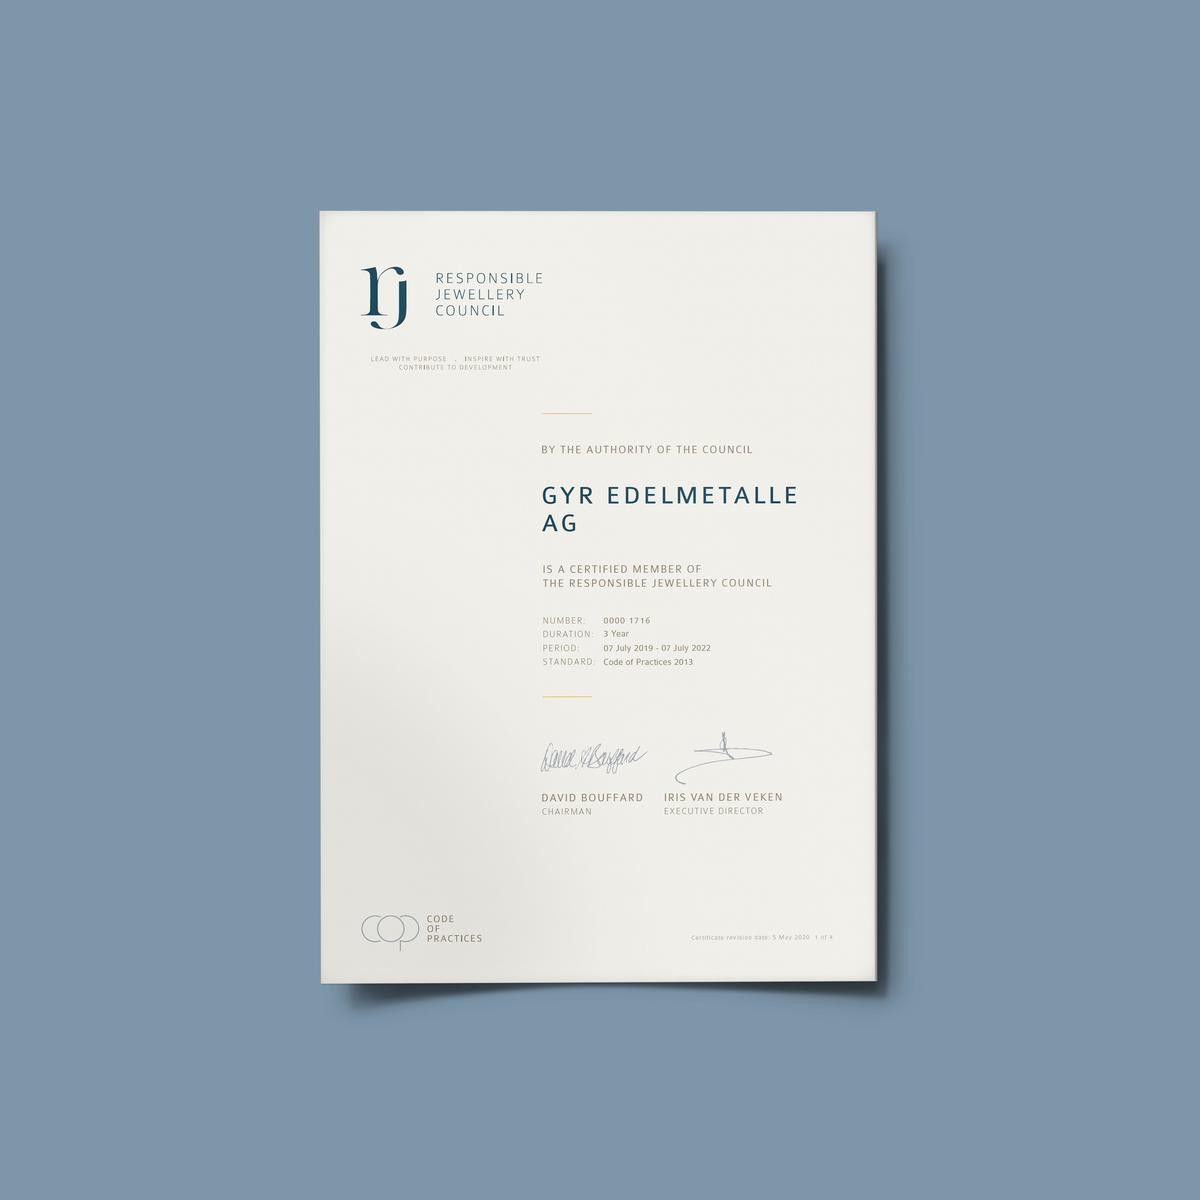 Le certificat de membre RJC actuel obtenu par Gyr Métaux Précieux SA.